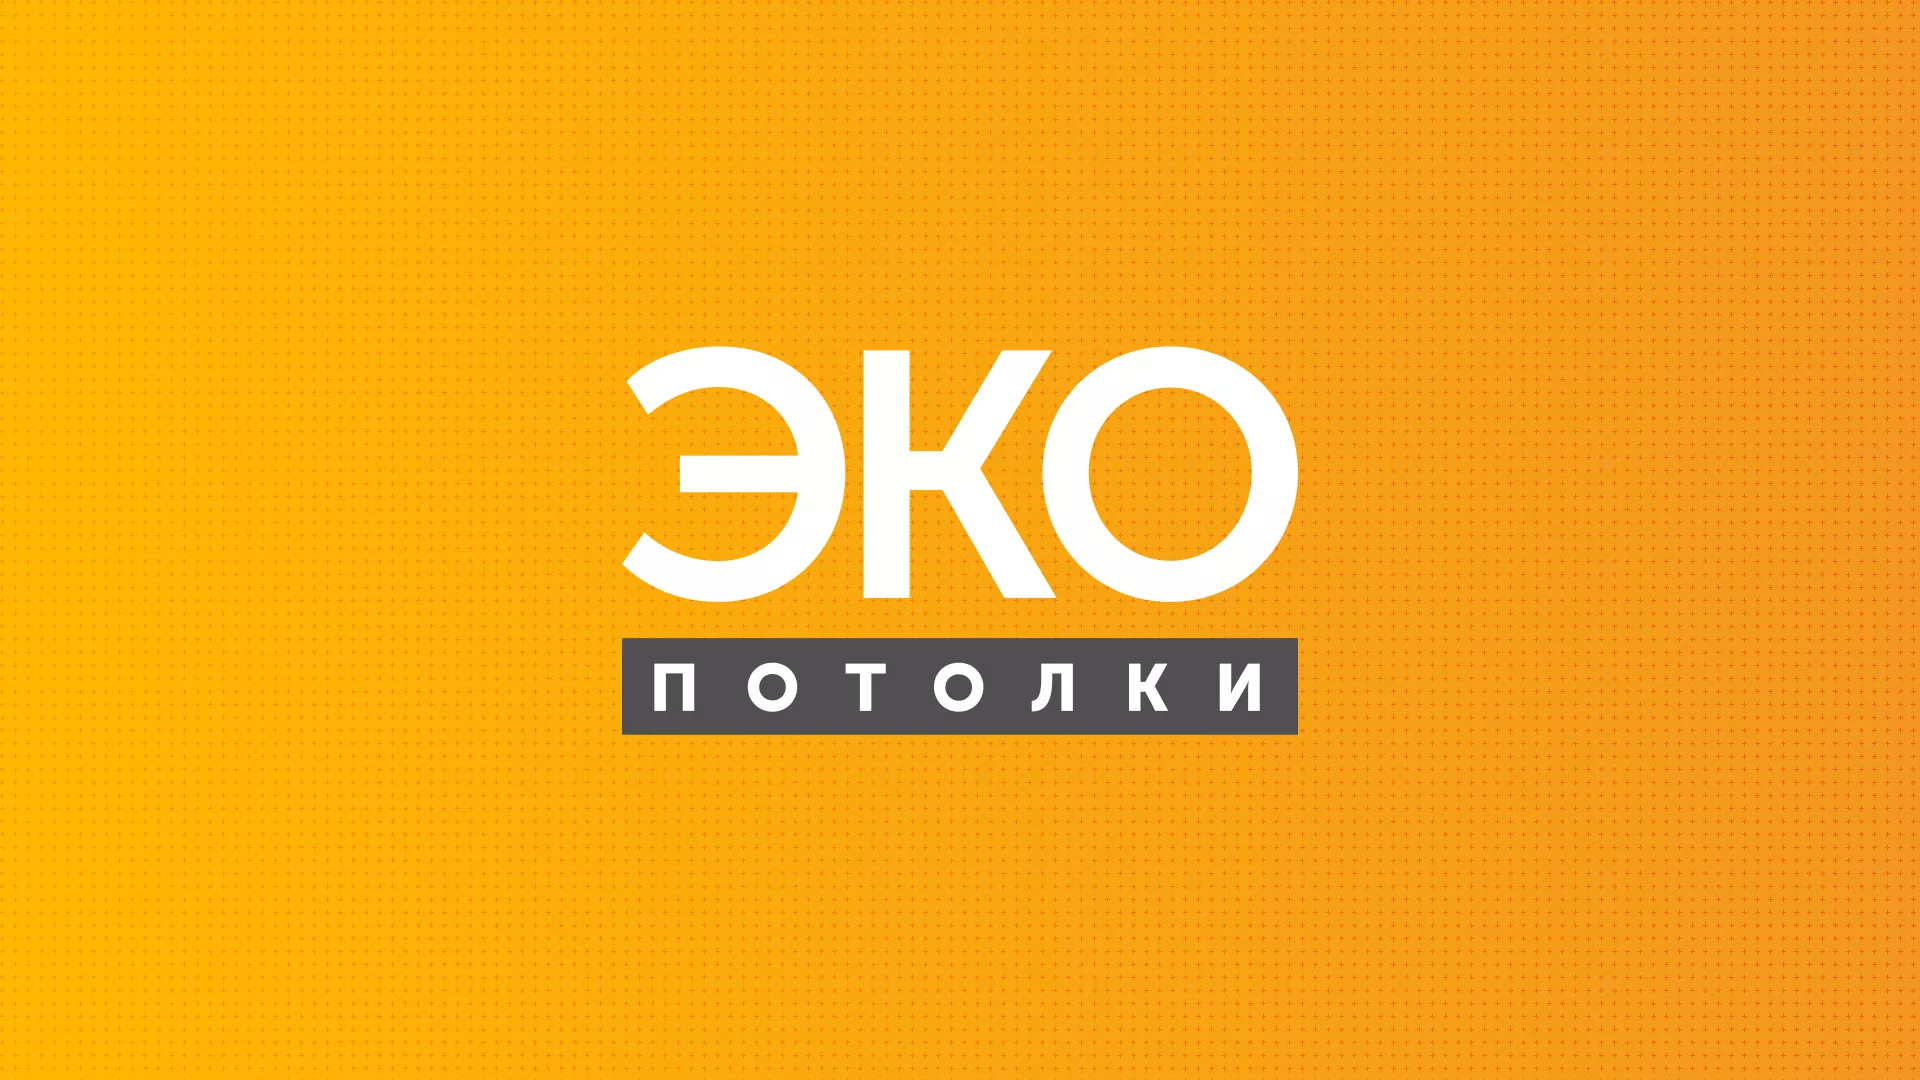 Разработка сайта по натяжным потолкам «Эко Потолки» в Нижнем Новгороде